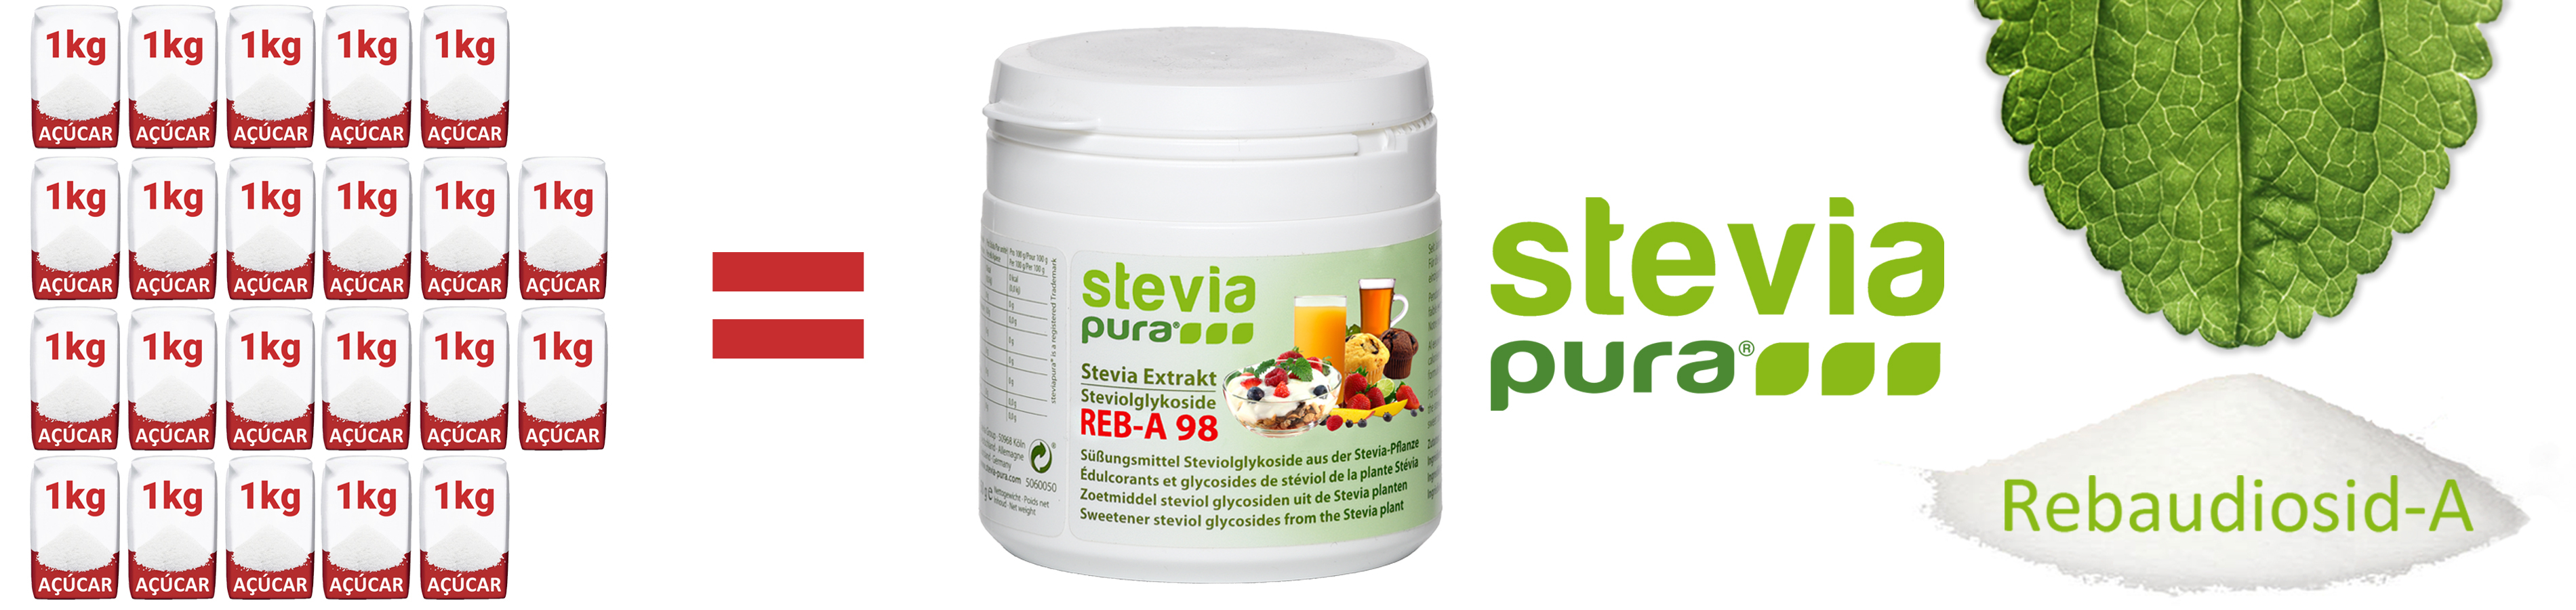 Rebaudiosídeo A 98% Puro de Pó de Stevia - Extracto Puro...